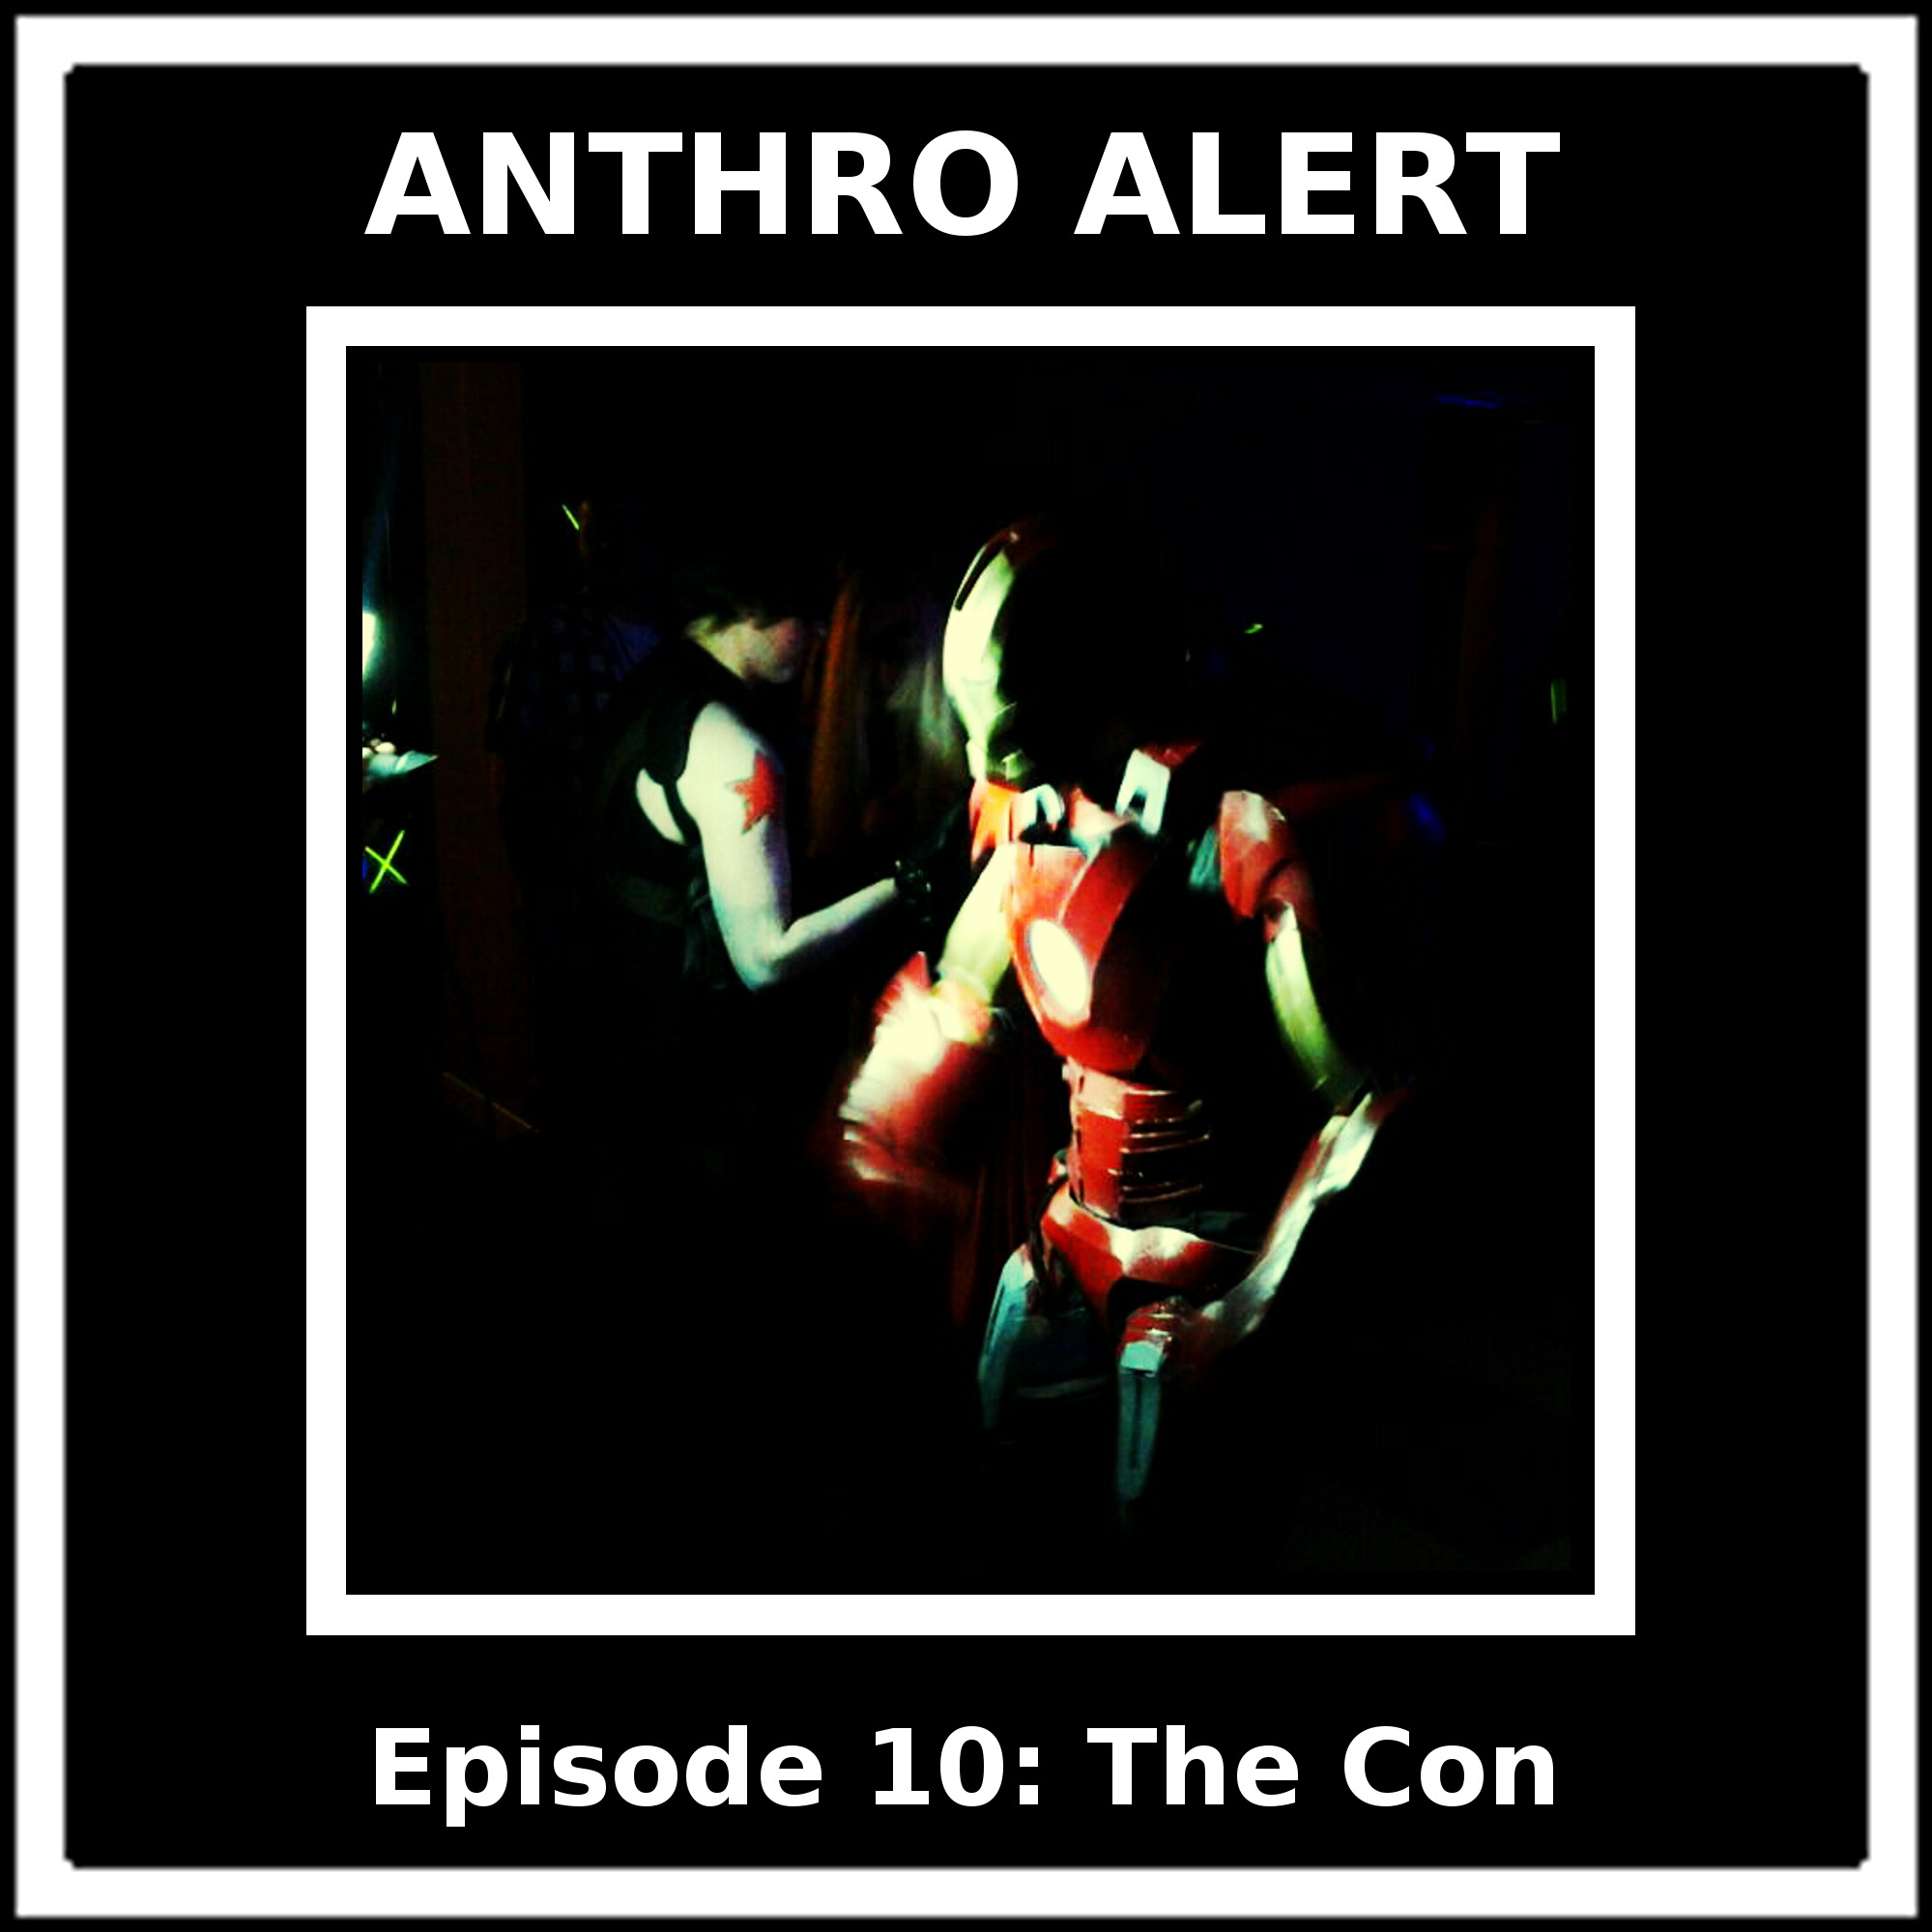 Episode 10: The Con